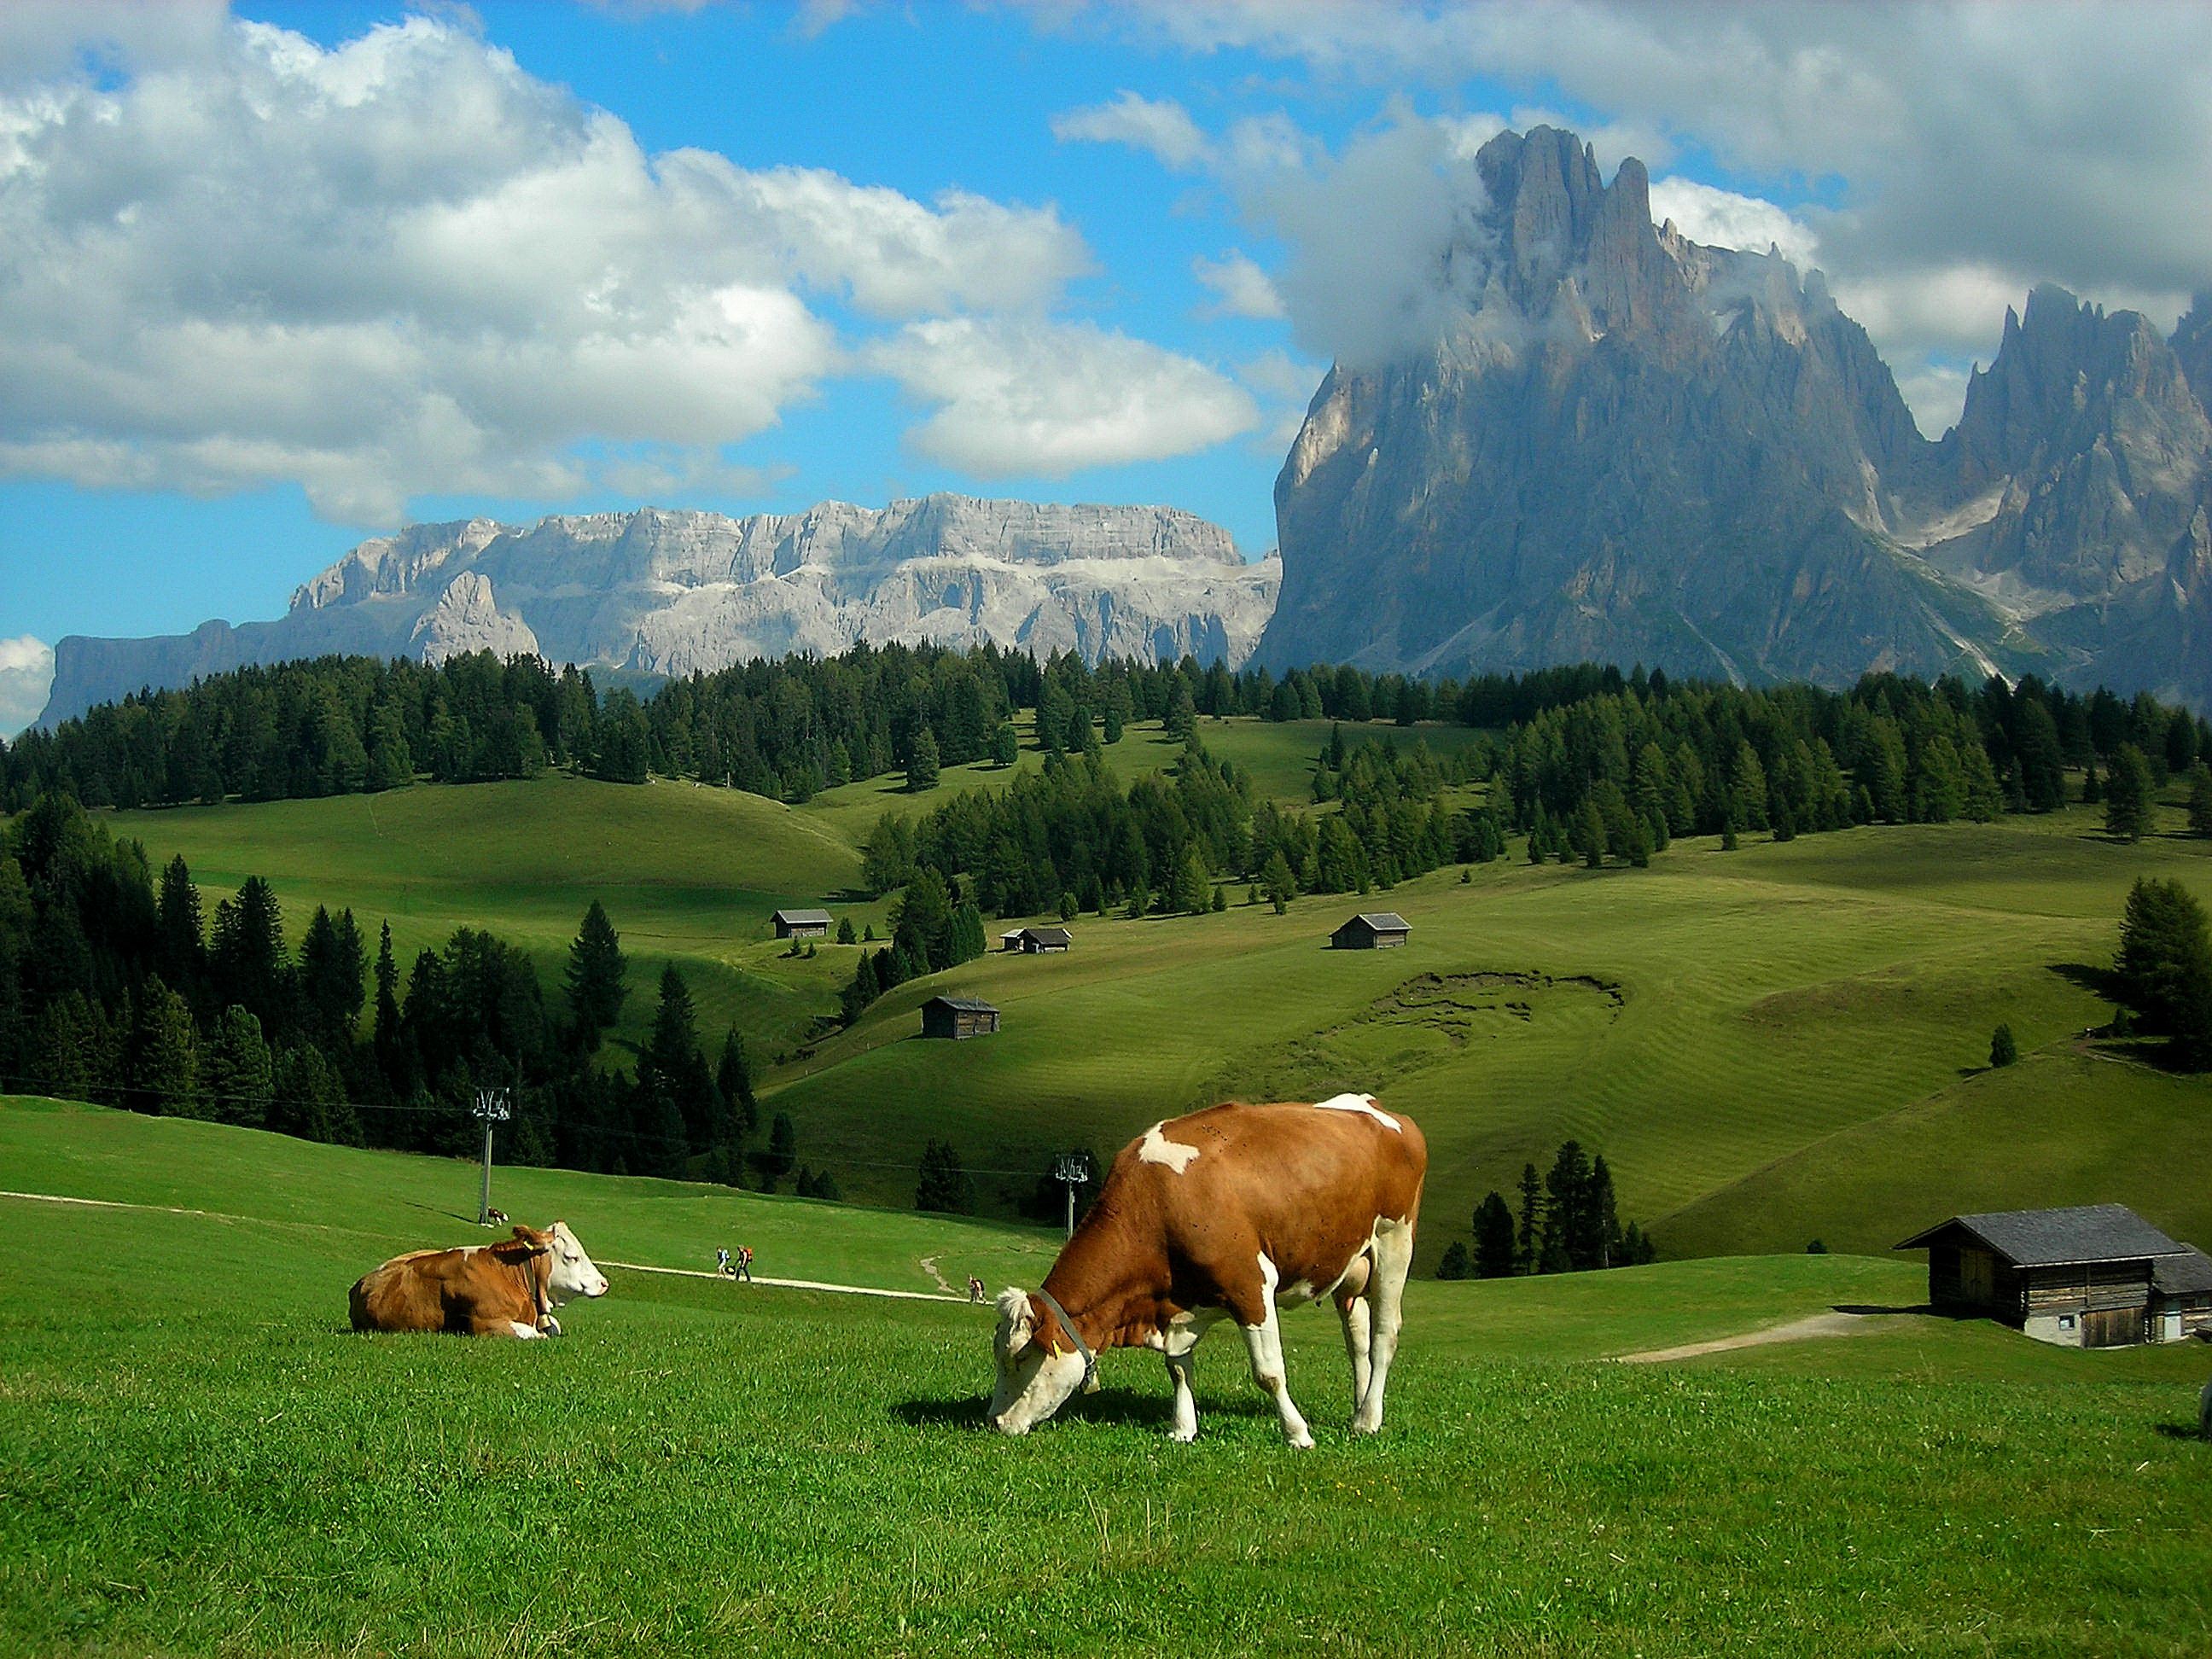 Alps meadows hills mountains cows landscape rustic farm